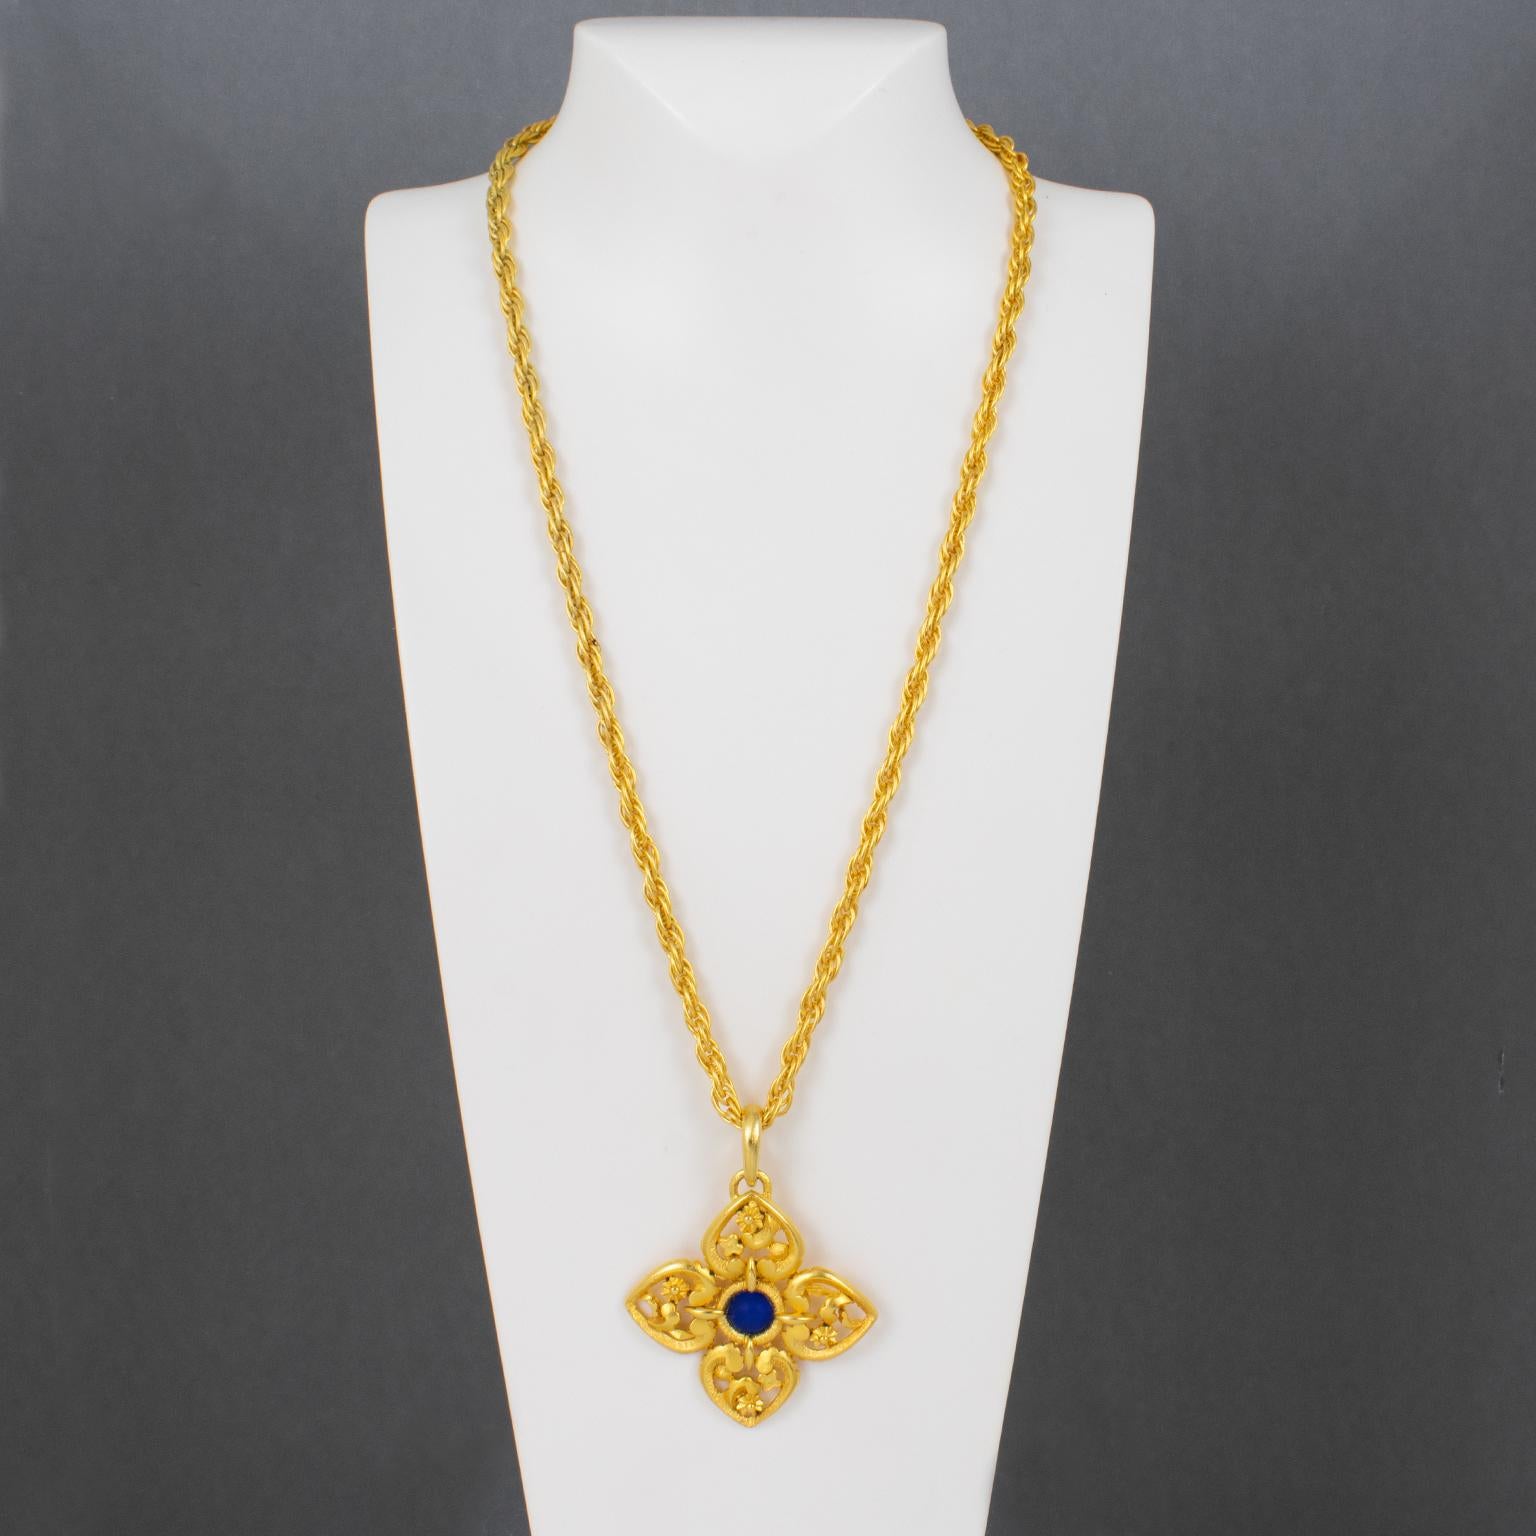 Modern Lanvin Paris Gilt Metal Pendant Necklace with Blue Poured Glass Cabochon For Sale